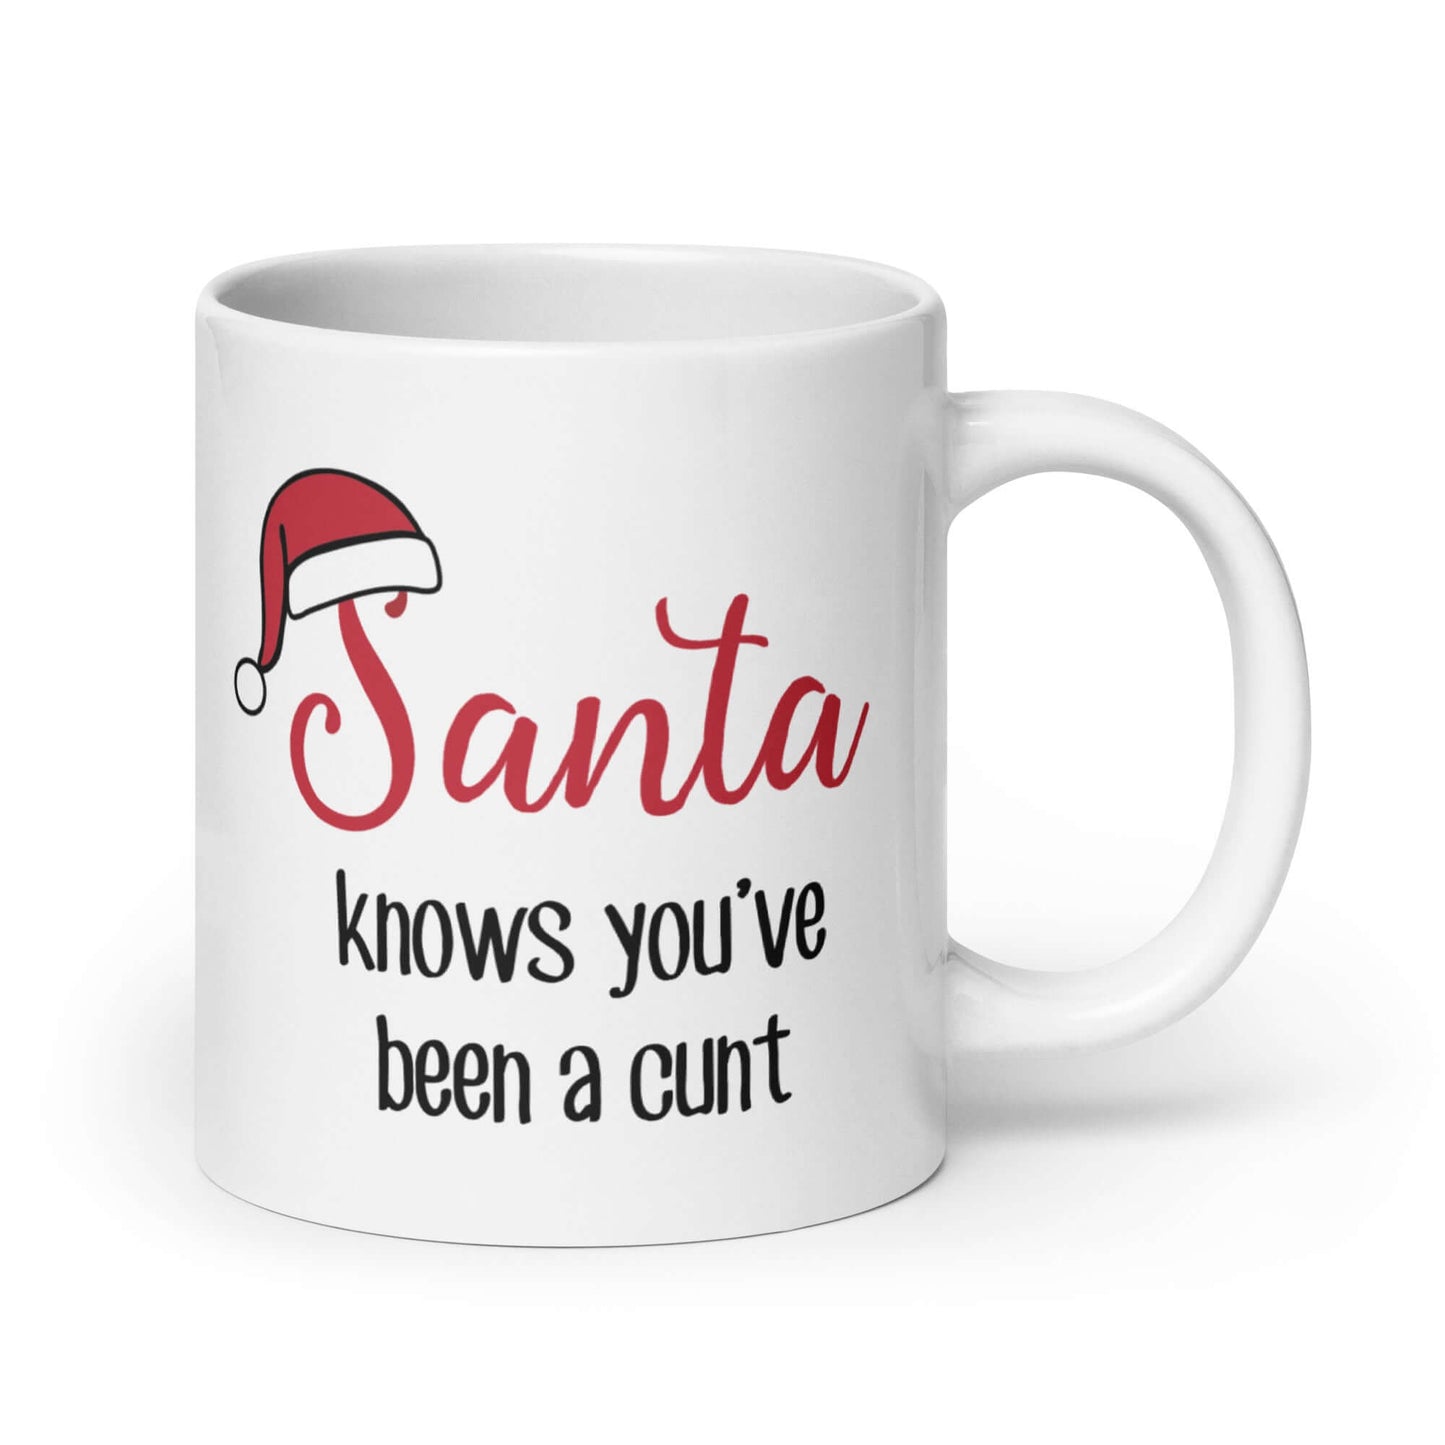 Inappropriate Christmas Santa mug. Santa knows you've been a cunt profanity gift.